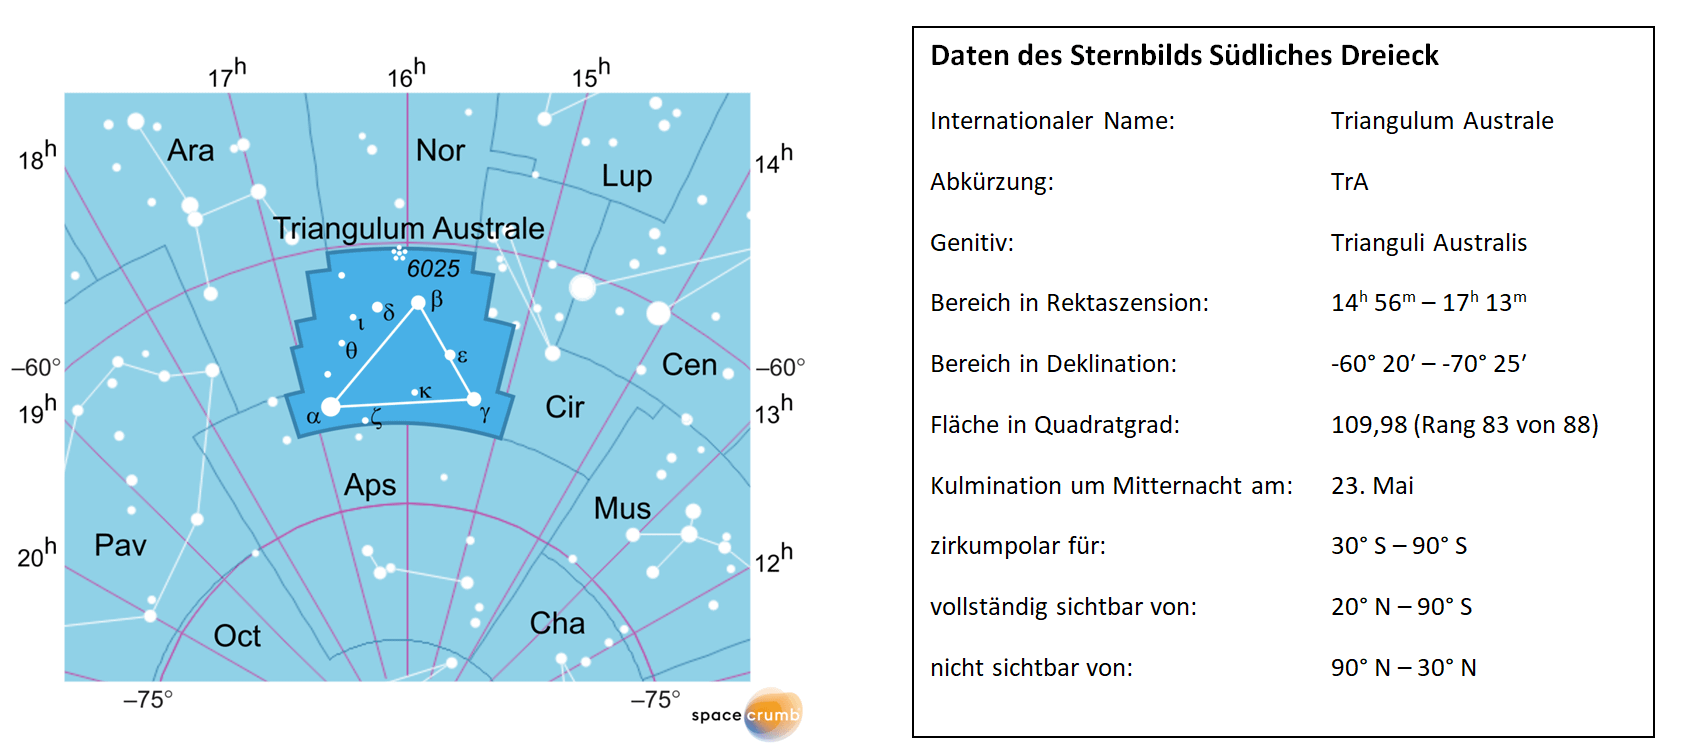 Links zeigt eine mit Koordinaten versehene Karte eines Himmelsausschnitts weiße Sterne auf hellblauem Hintergrund. Die Fläche, die das Sternbild Südliches Dreieck einnimmt, ist dunkelblau hervorgehoben. Eine Tabelle rechts gibt wichtige Daten des Sternbilds Südliches Dreieck an.